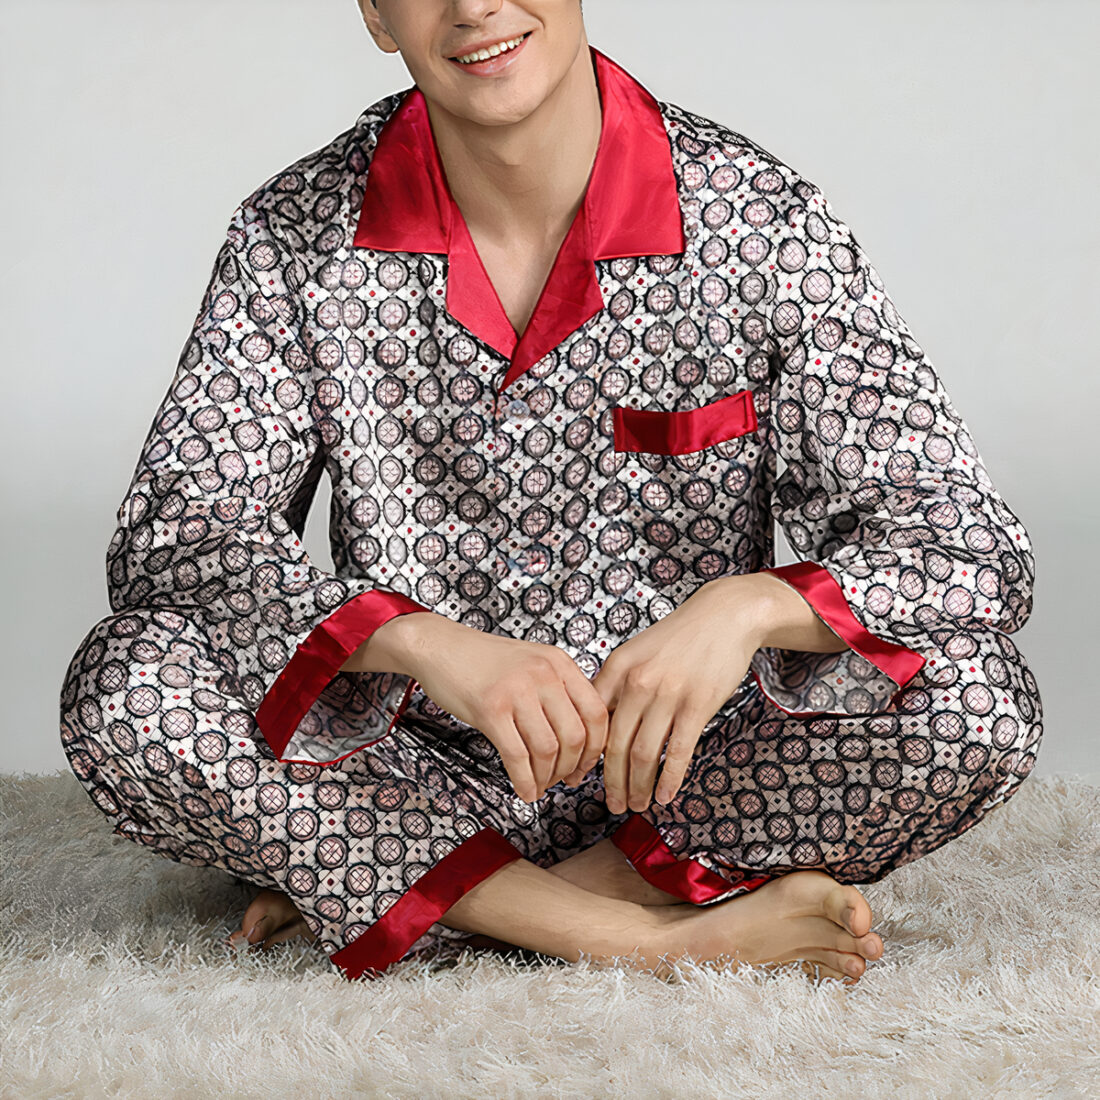 Homme pieds nus, assis en tailleur sur un tapis beige porte un pyjama en satin à motifs géométriques gris avec les bordures rouges. Ses coudes sont posés sur ses genoux.